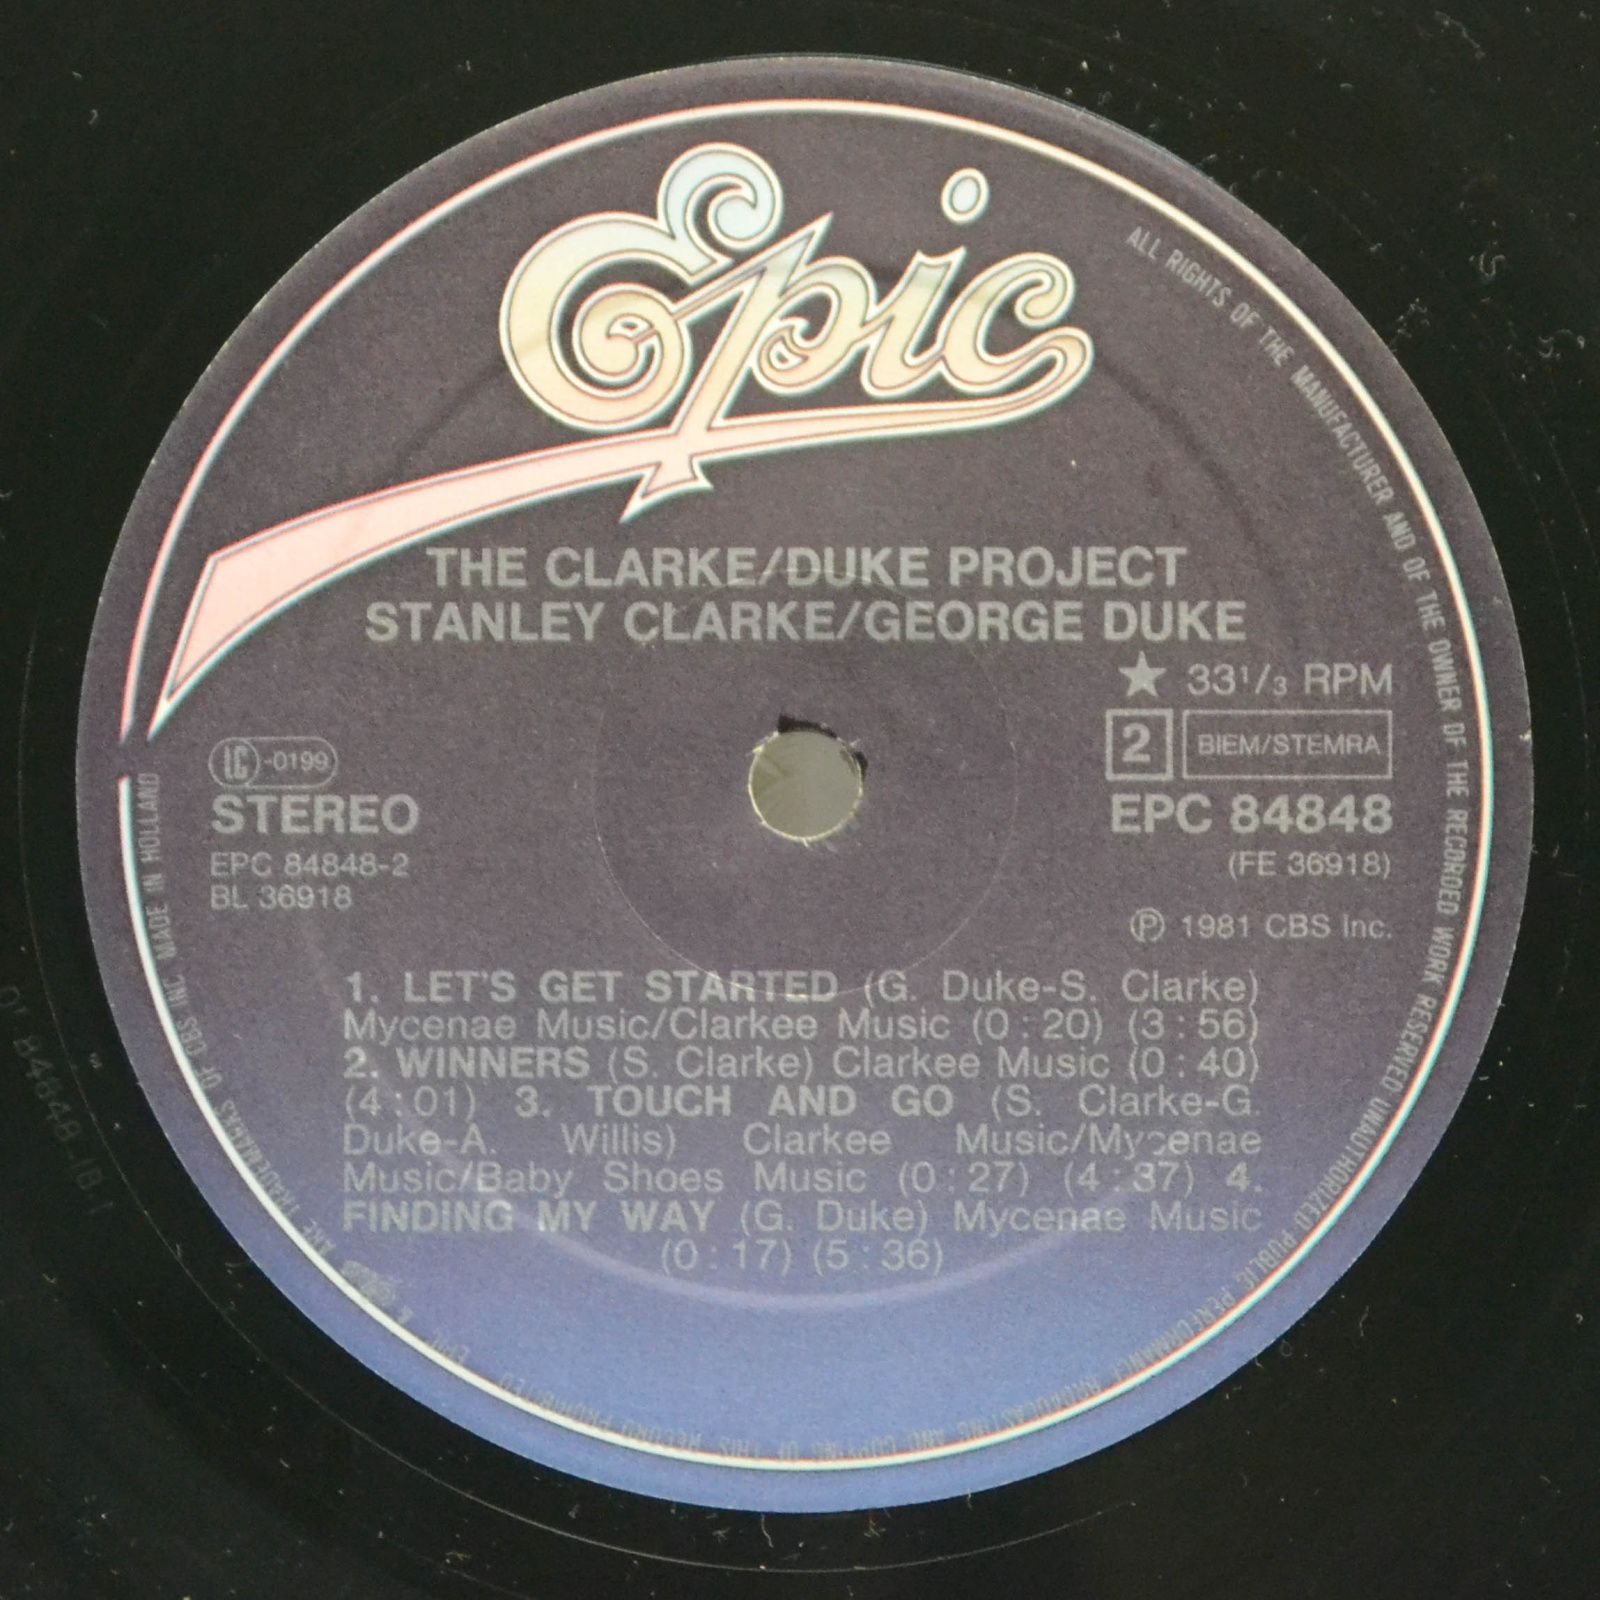 Stanley Clarke / George Duke — The Clarke / Duke Project, 1981